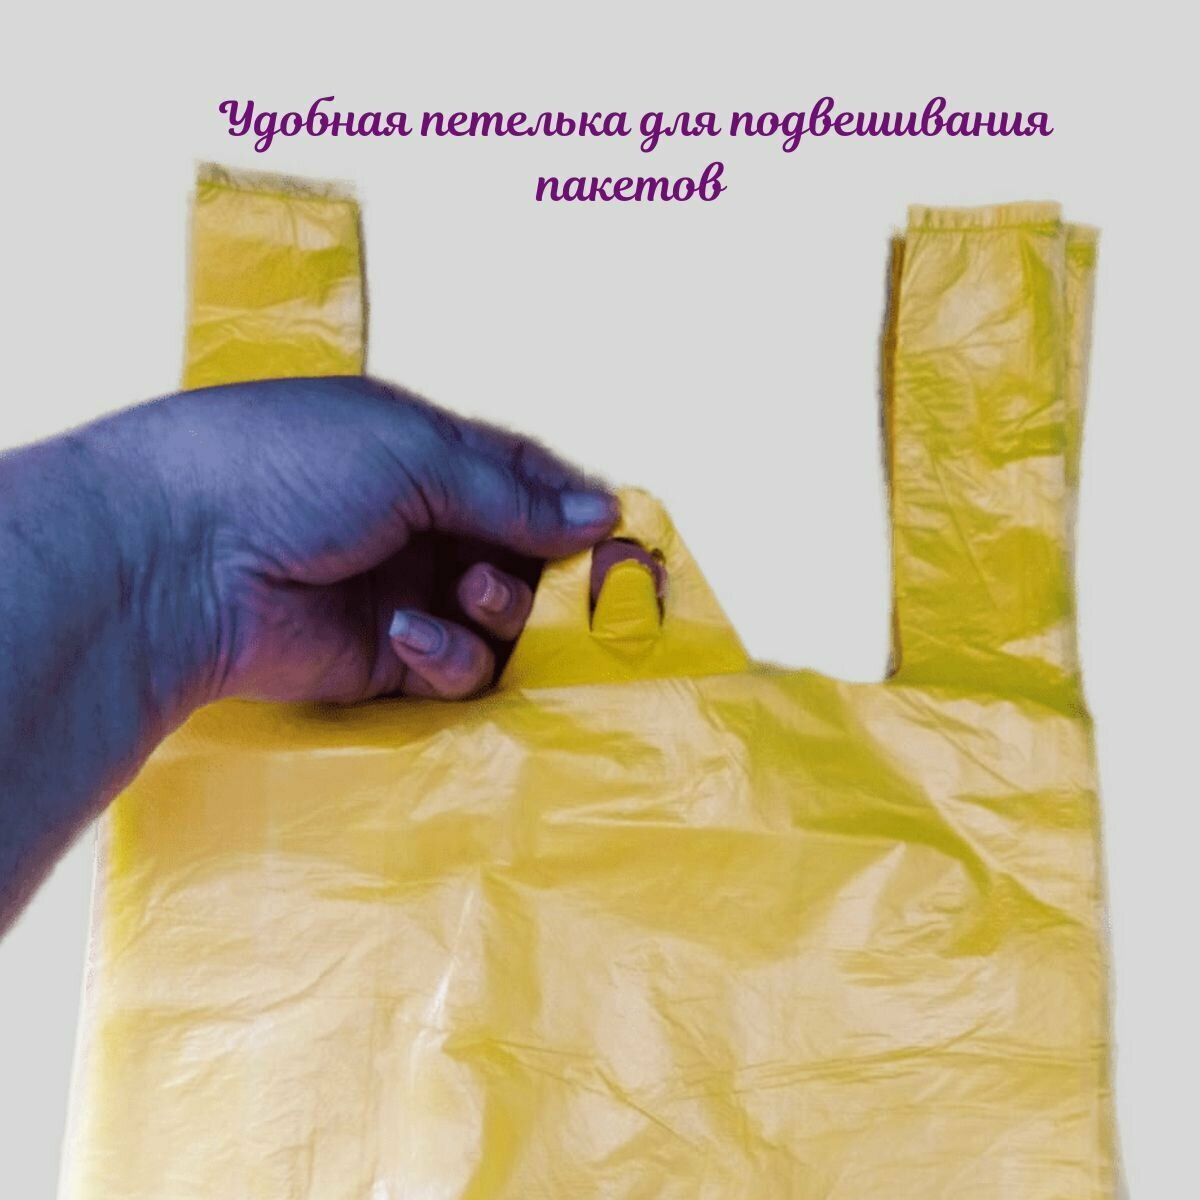 Пакет майка полиэтиленовый фасовочный с ручками. 200 штук,25+12х45 см,10 мкм. ПЭ жёлтый.Товар для упаковки,хранения, фасовки,под мусор. - фотография № 8